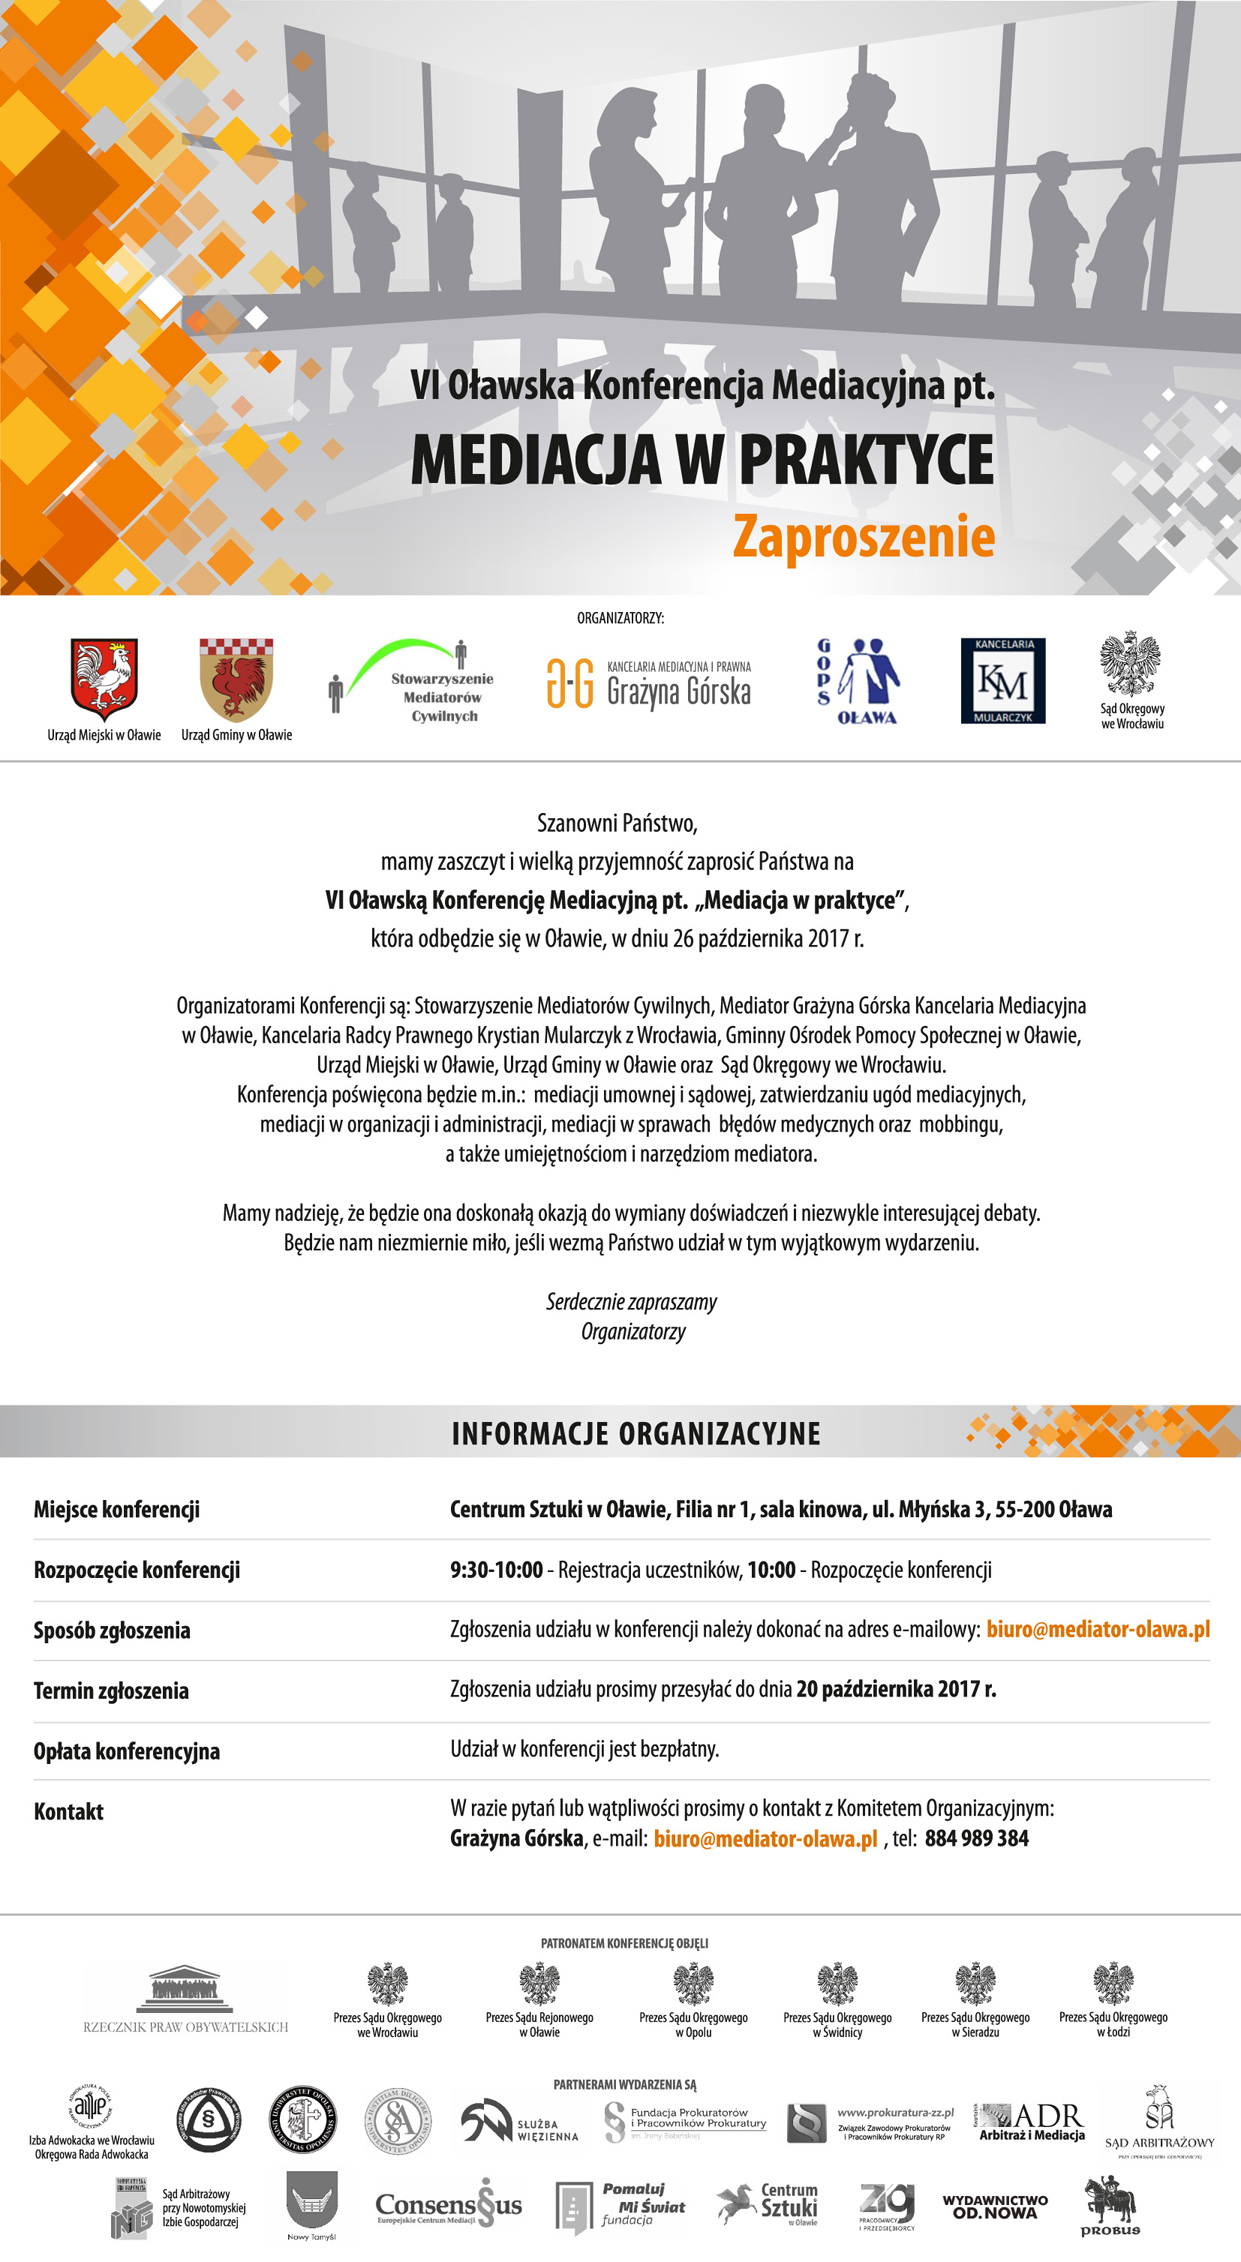 KonferencjaOlawa2017-zaproszenie-mail.jpg